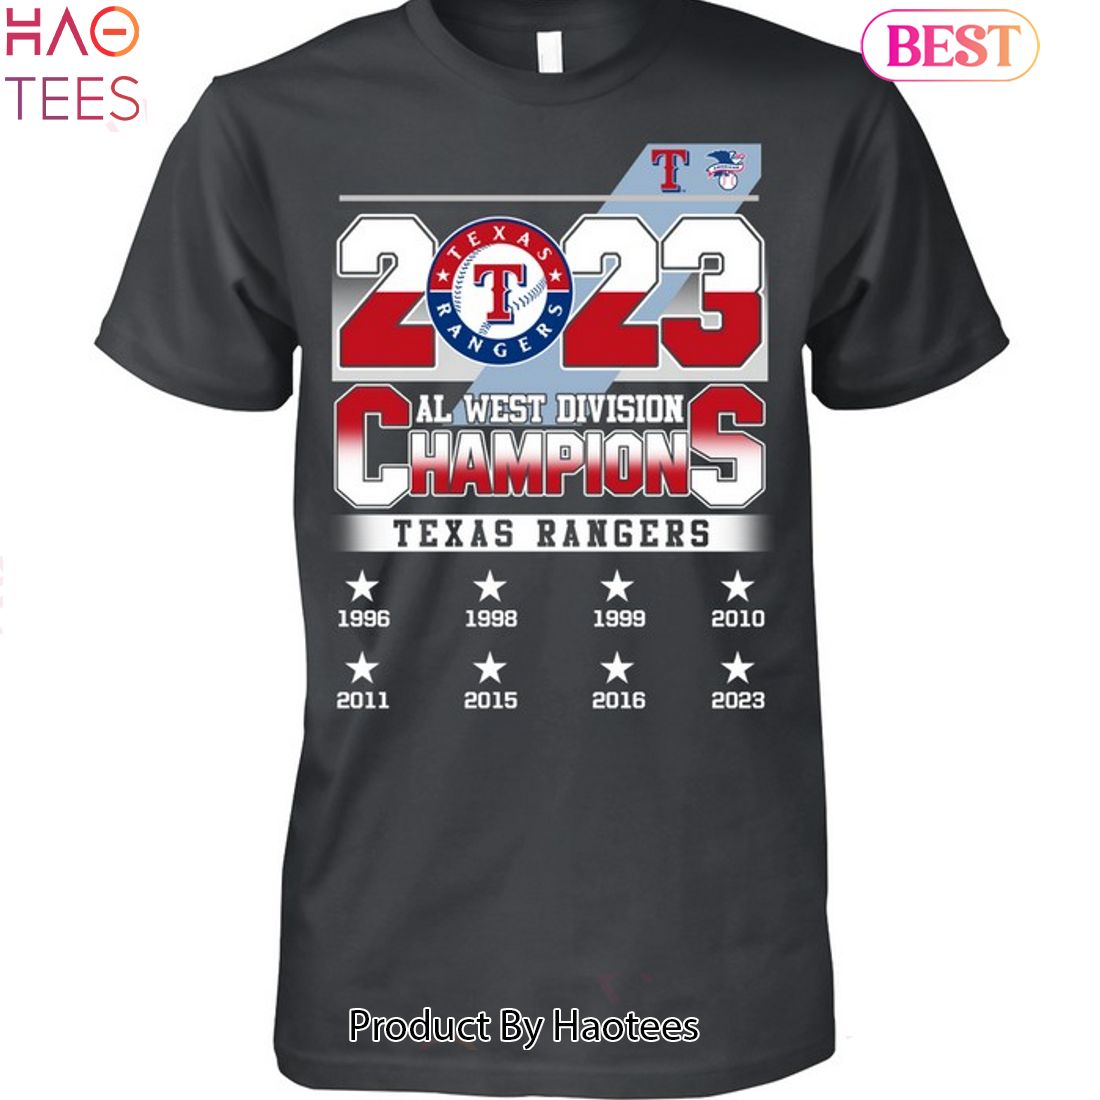 BEST 2023 Texas Rangers Al West Division Champions Unisex T-Shirt